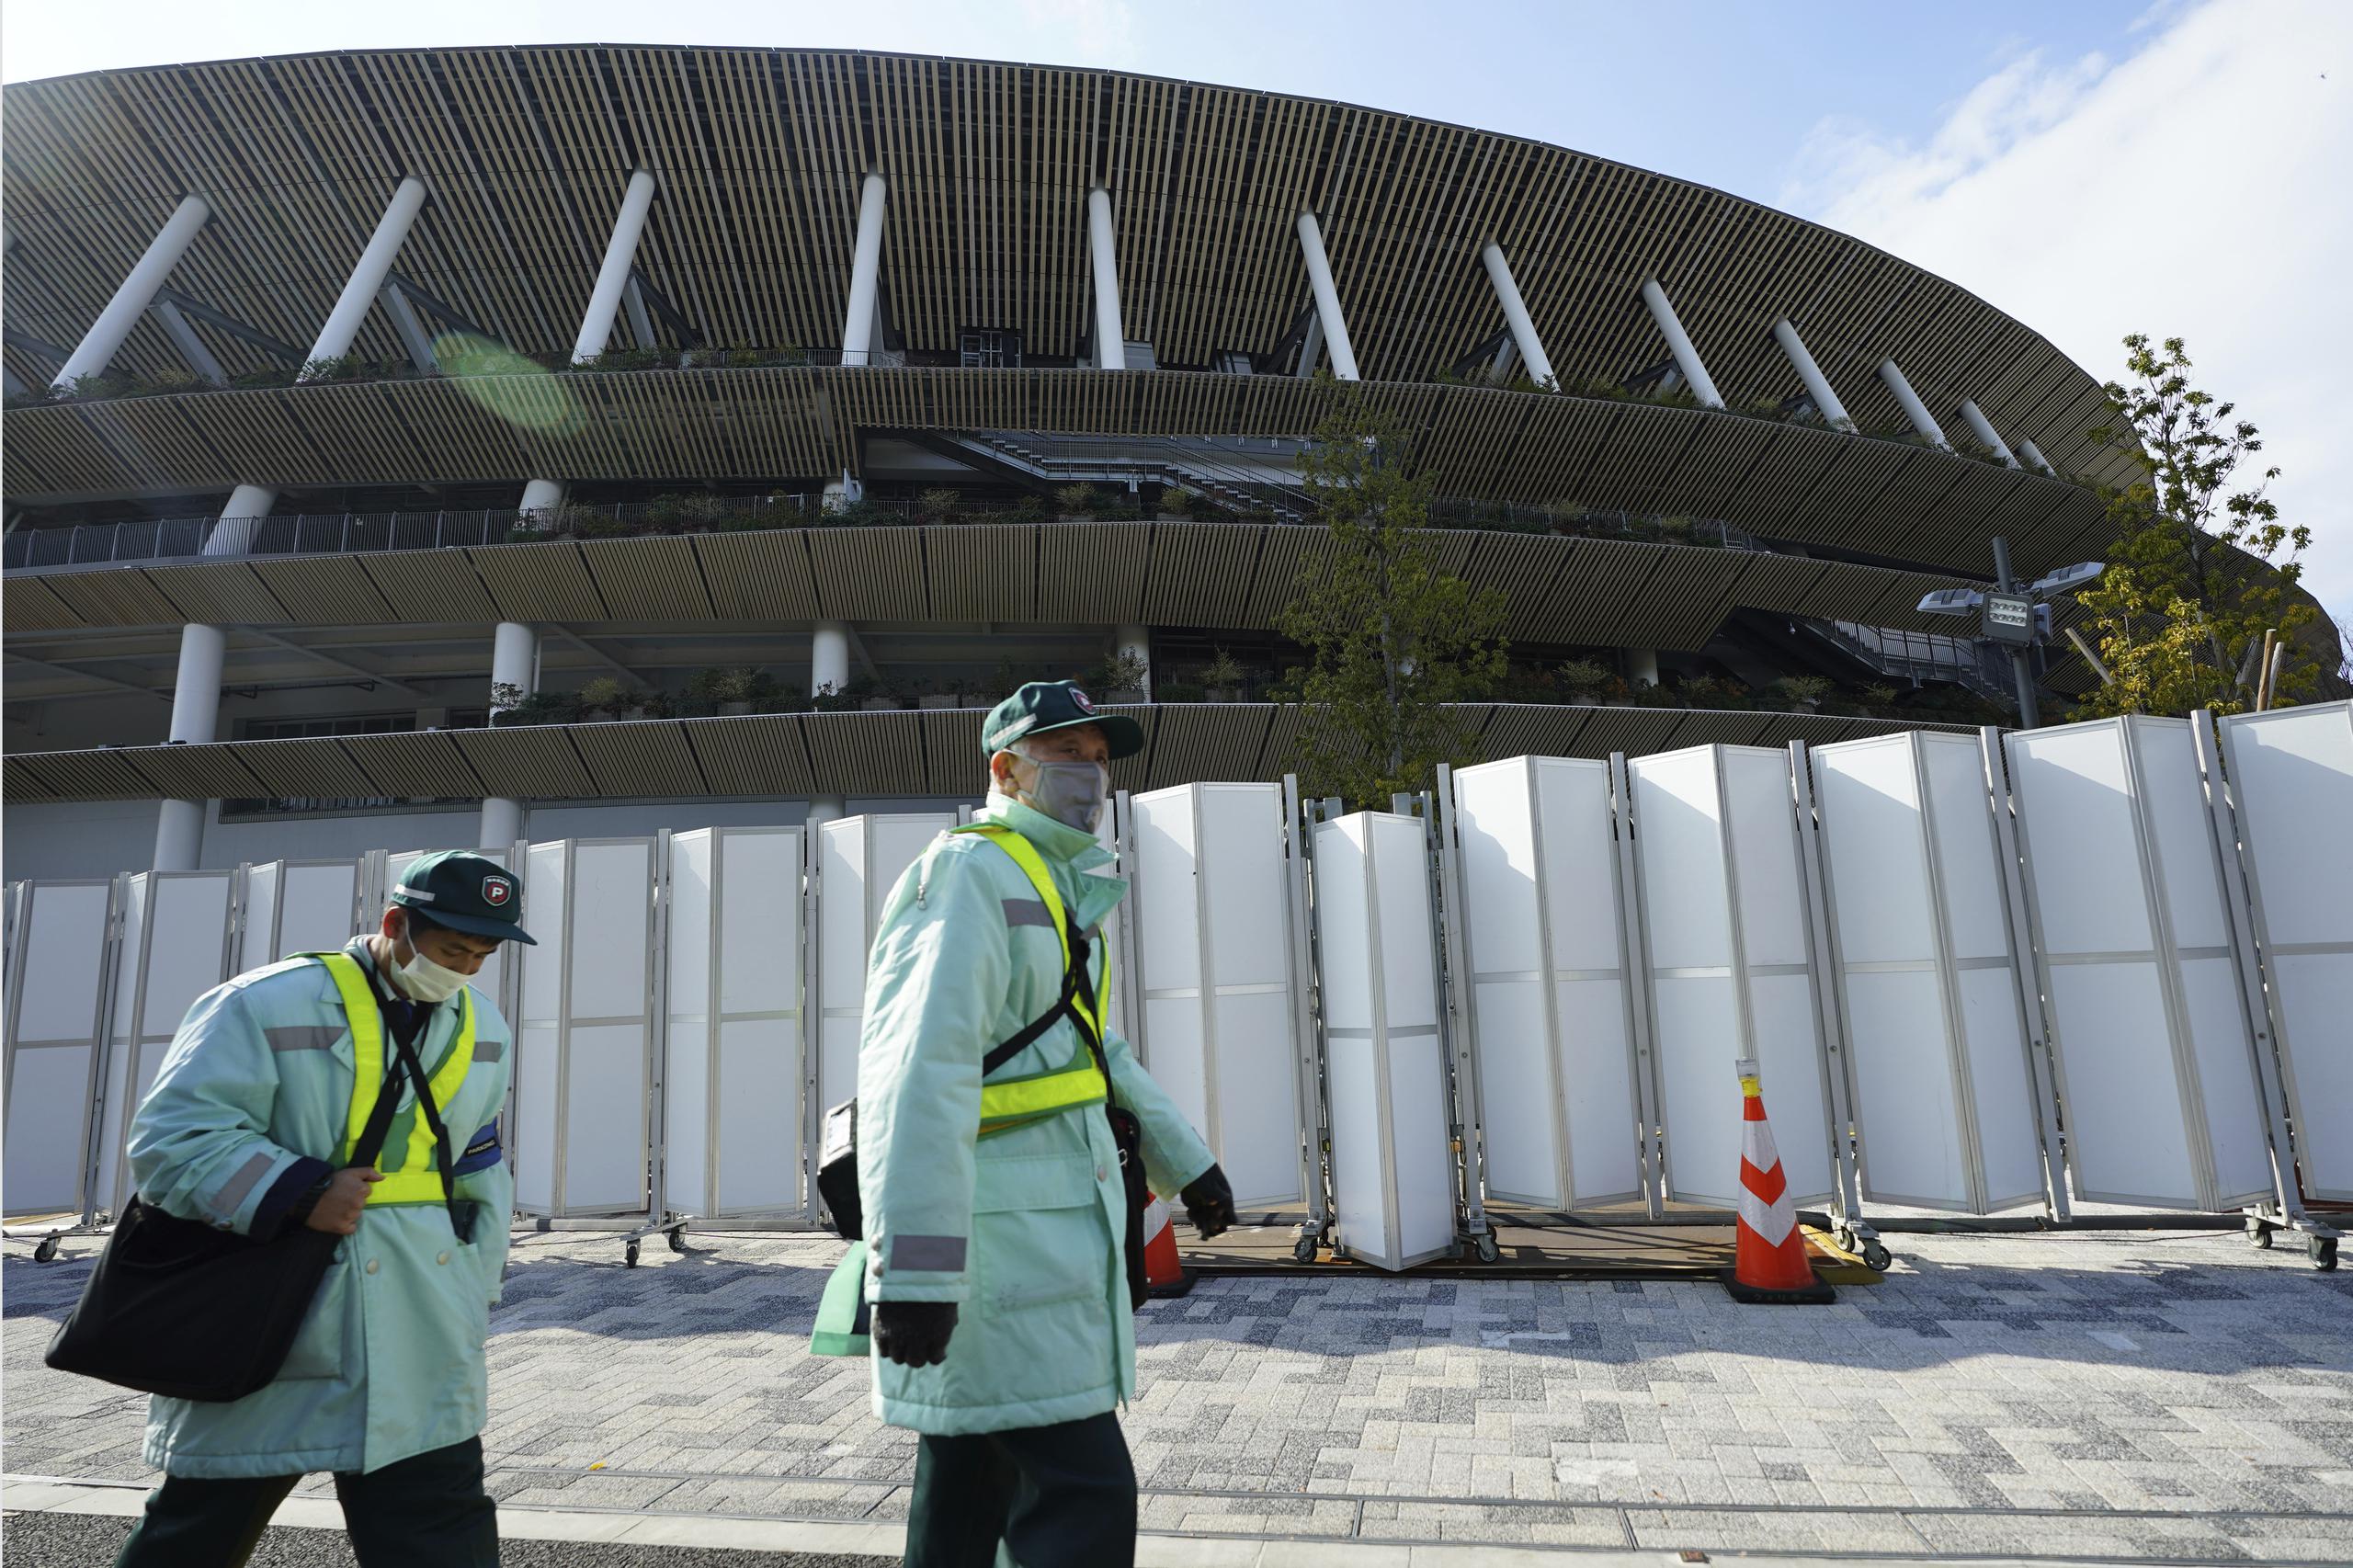 Inspectores de estacionamiento con máscaras faciales para protegerse contra la propagación del coronavirus pasan por el Estadio Nacional de Japón, donde se planea la ceremonia de apertura y muchos otros eventos para los Juegos Olímpicos de Tokio 2020.